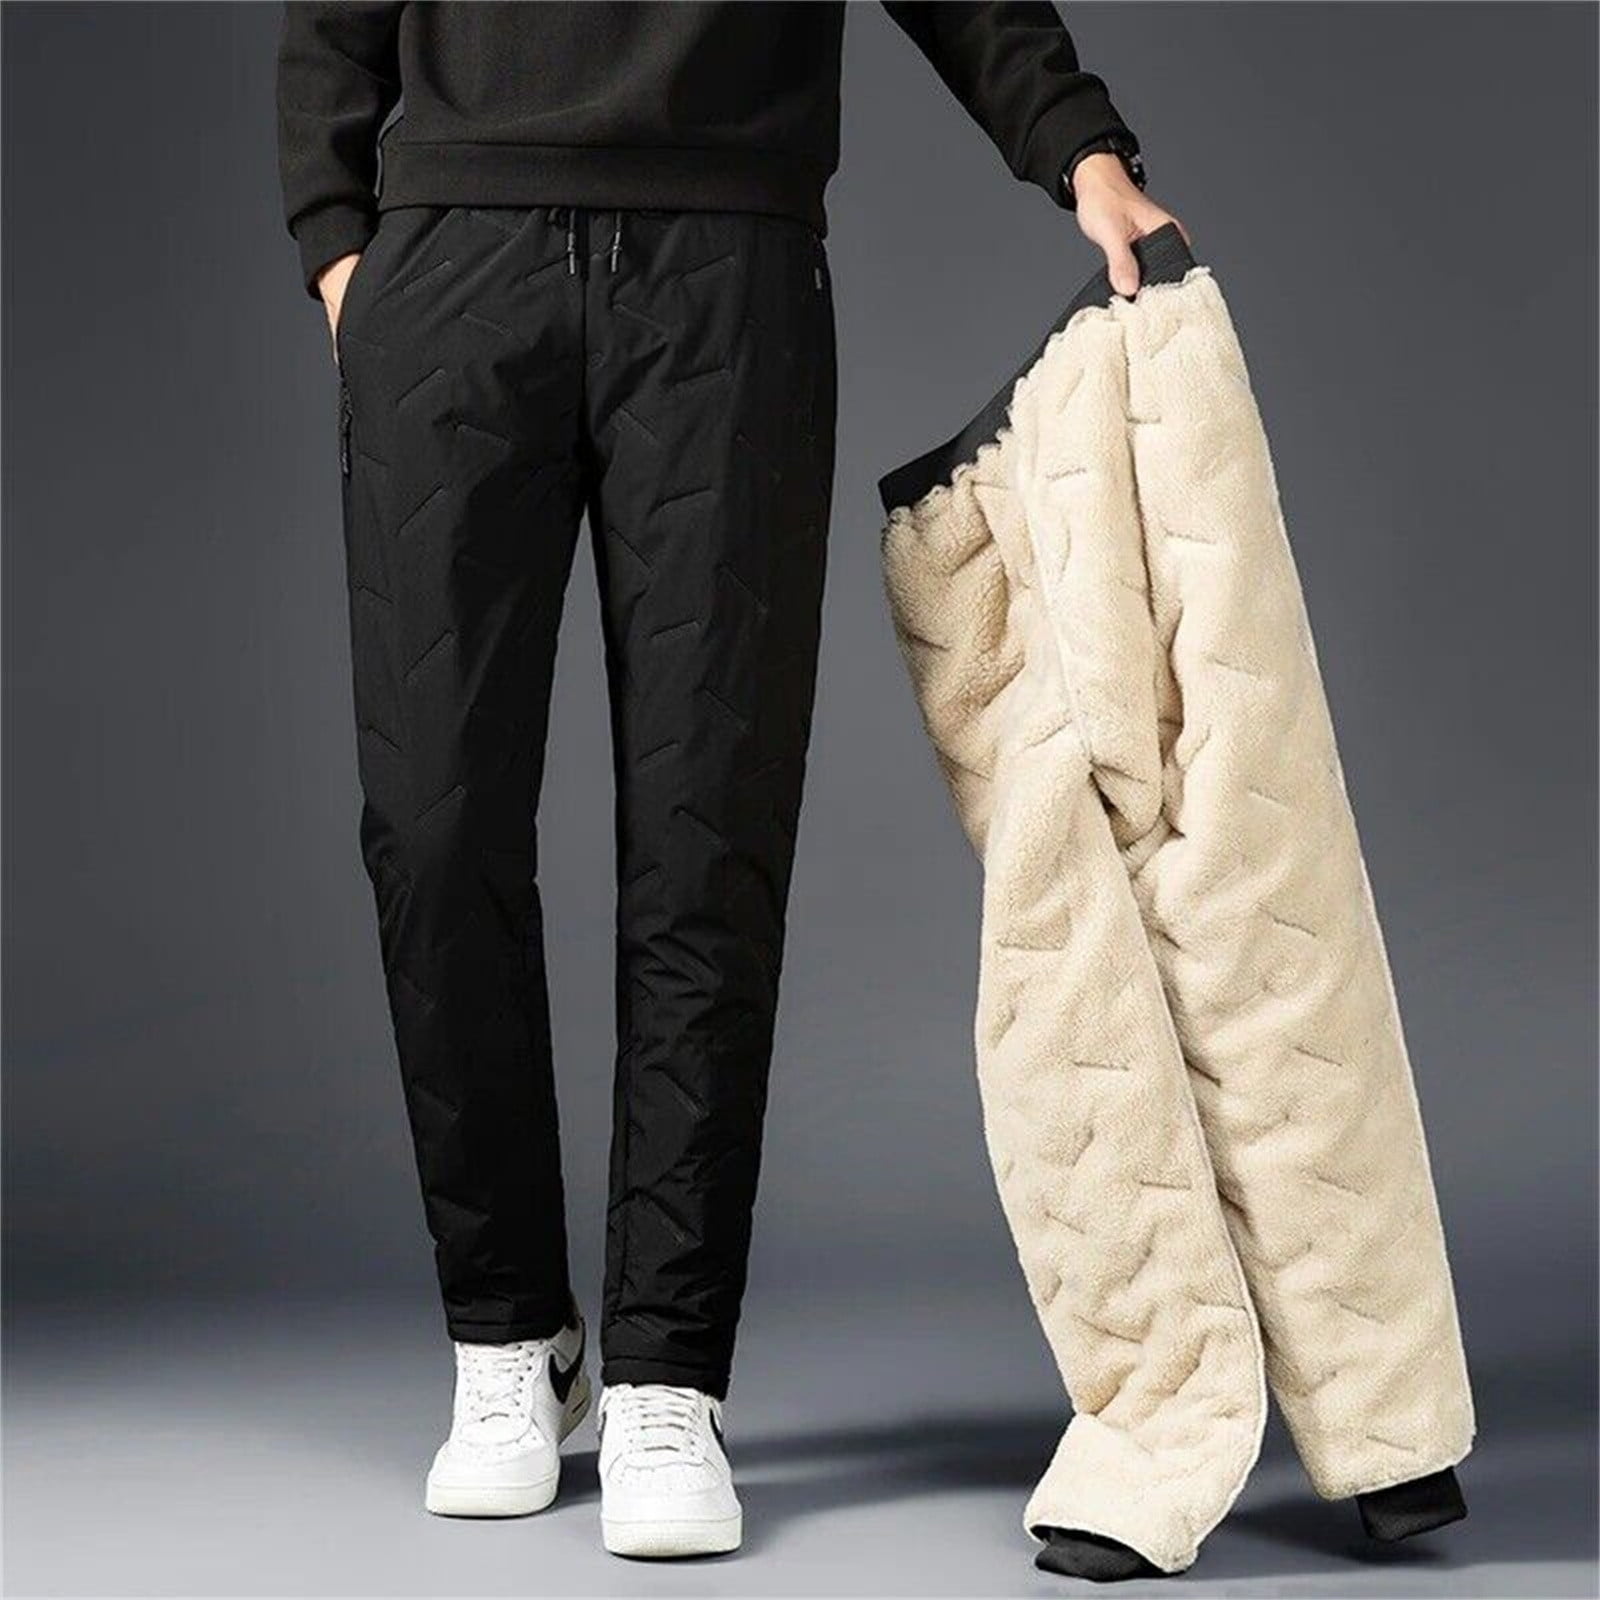 Cargo Pants Mens Lined Sweatpants Winter Warm Fuzzy Leggings